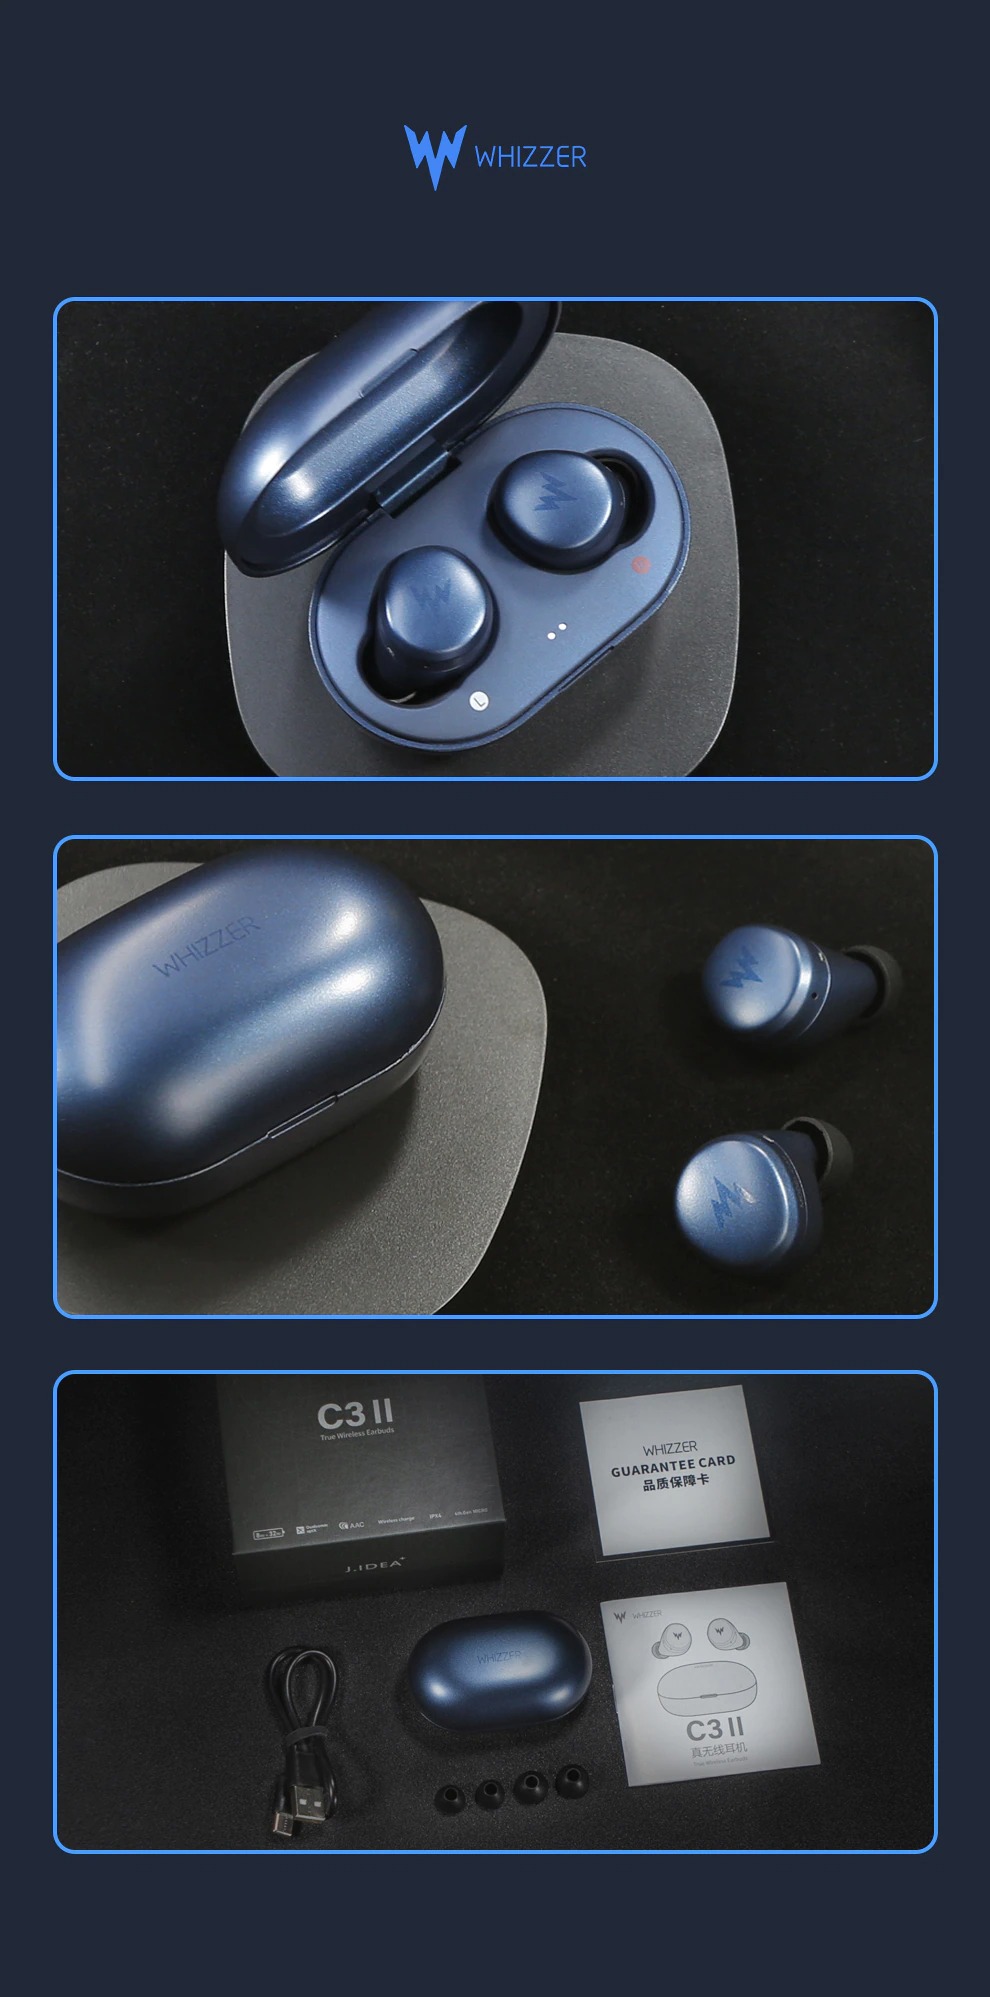 Whizzer C3II True Wireless Earbuds with Qualcome Apt-X